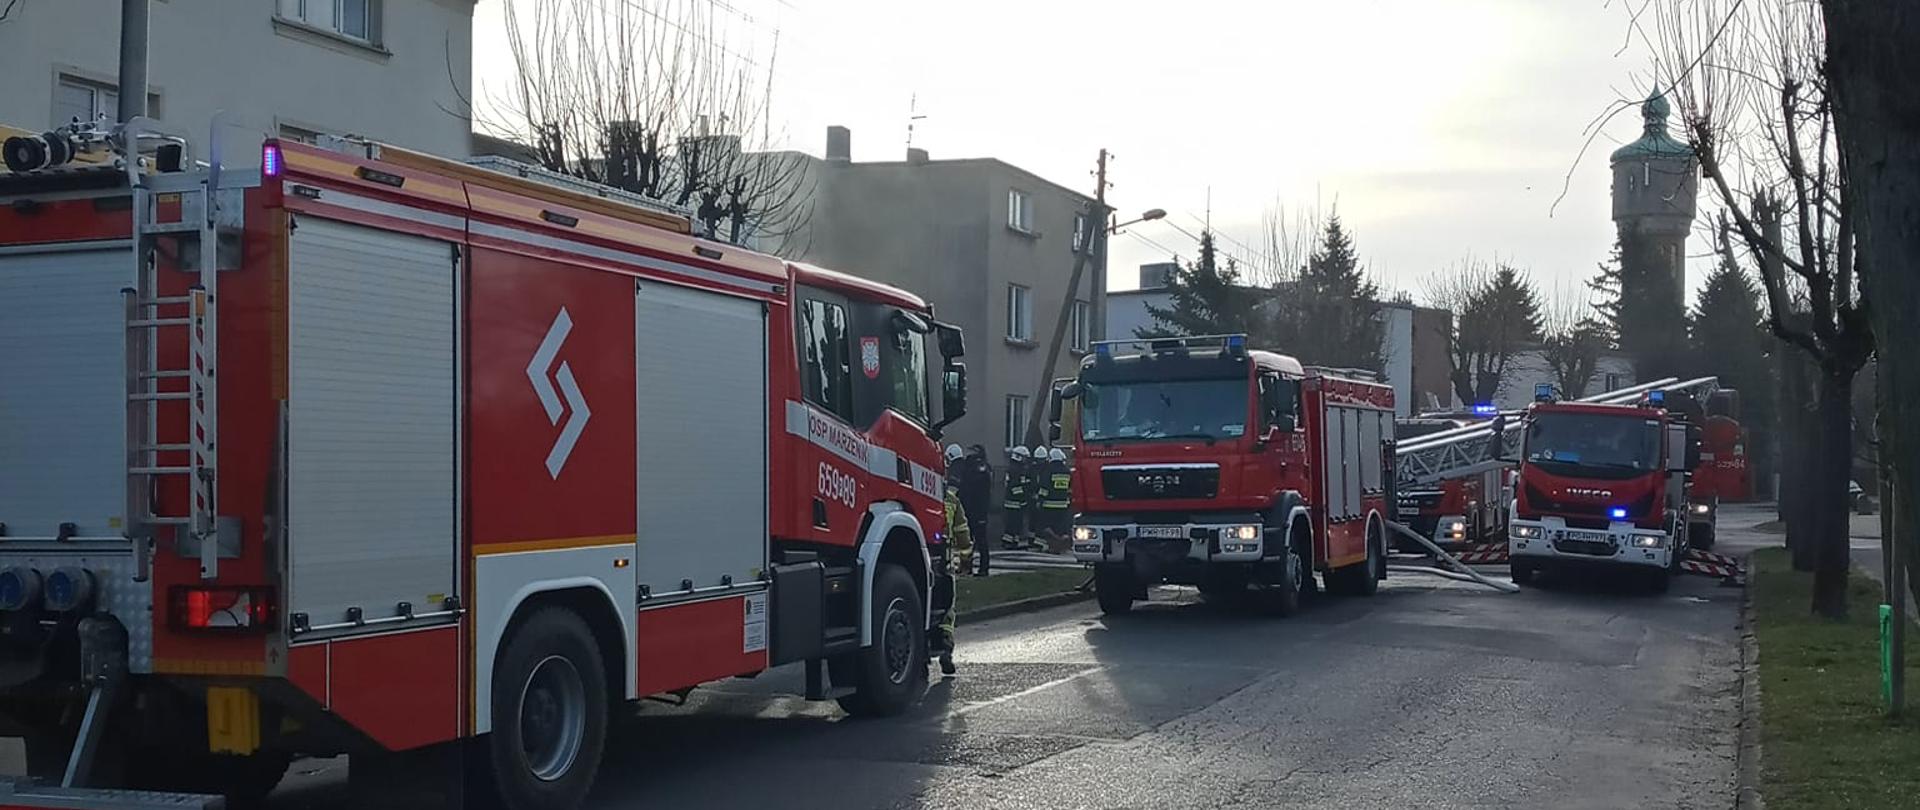 Zdjęcie przedstawia trzy wozy strażackie stojące na jezdni. W tle dwa domy